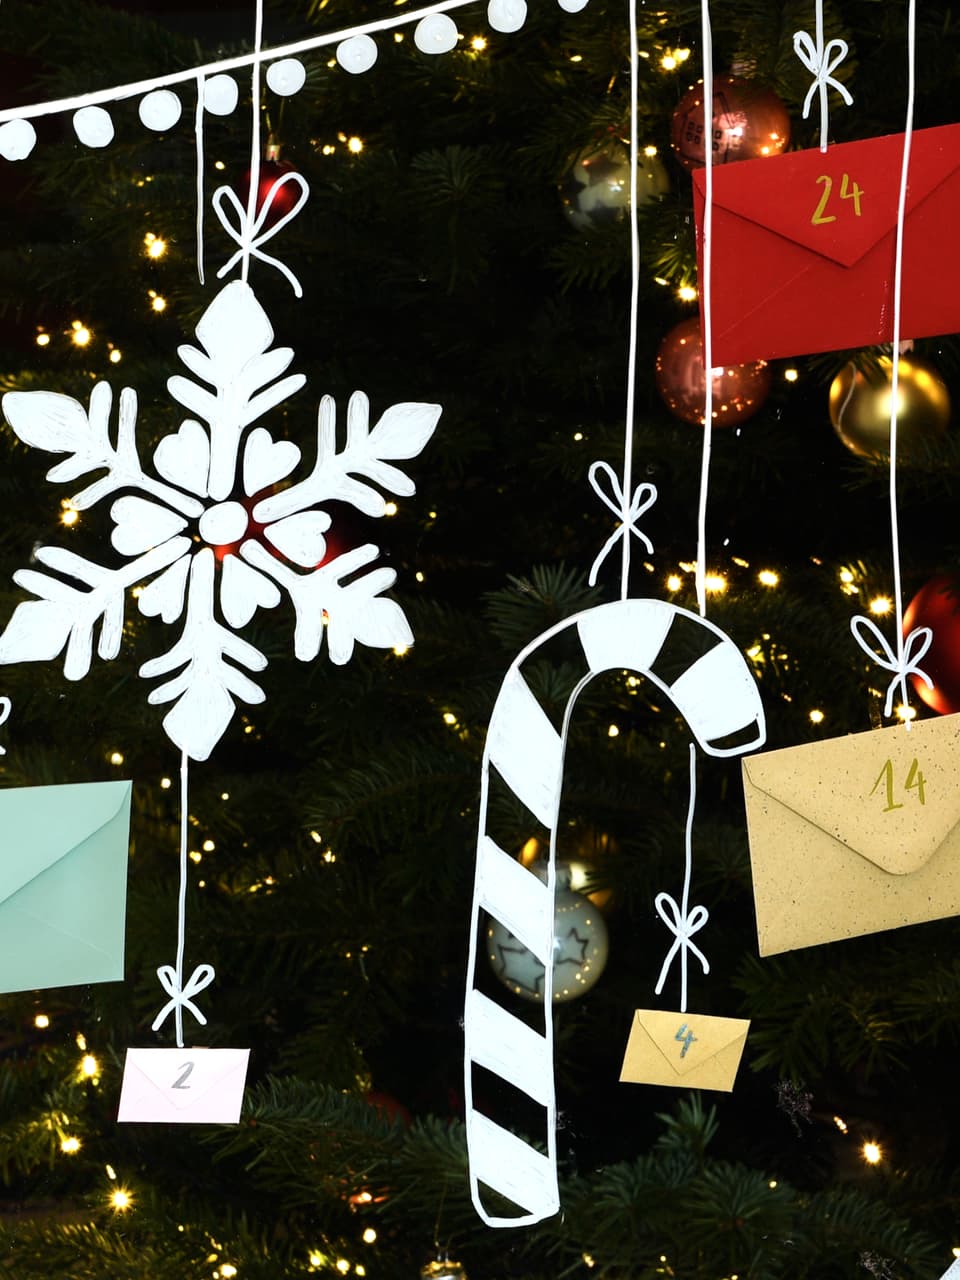 Ein festlicher Weihnachtsbaum mit funkelnden Lichtern, eine große dekorative Schneeflocke und ein Adventskalender mit Umschlägen, die den Countdown bis zum Weihnachtstag darstellen, alles hervorgehoben unter edding 4085 Kreidemarker UV-Licht.